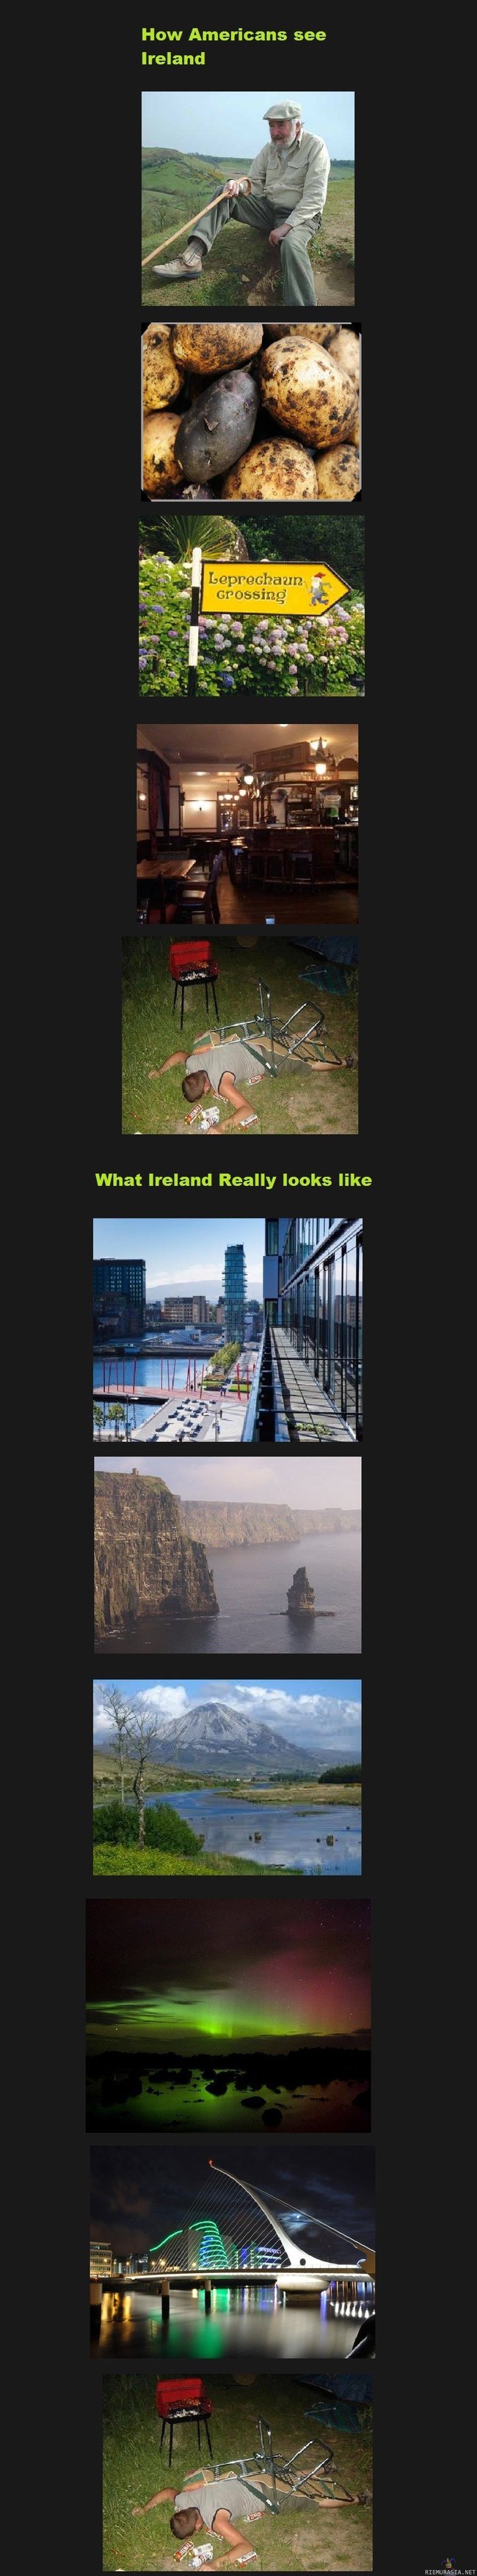 Irlanti - Amerikkalaisten näkemys Irlannista vastaan todellisuus